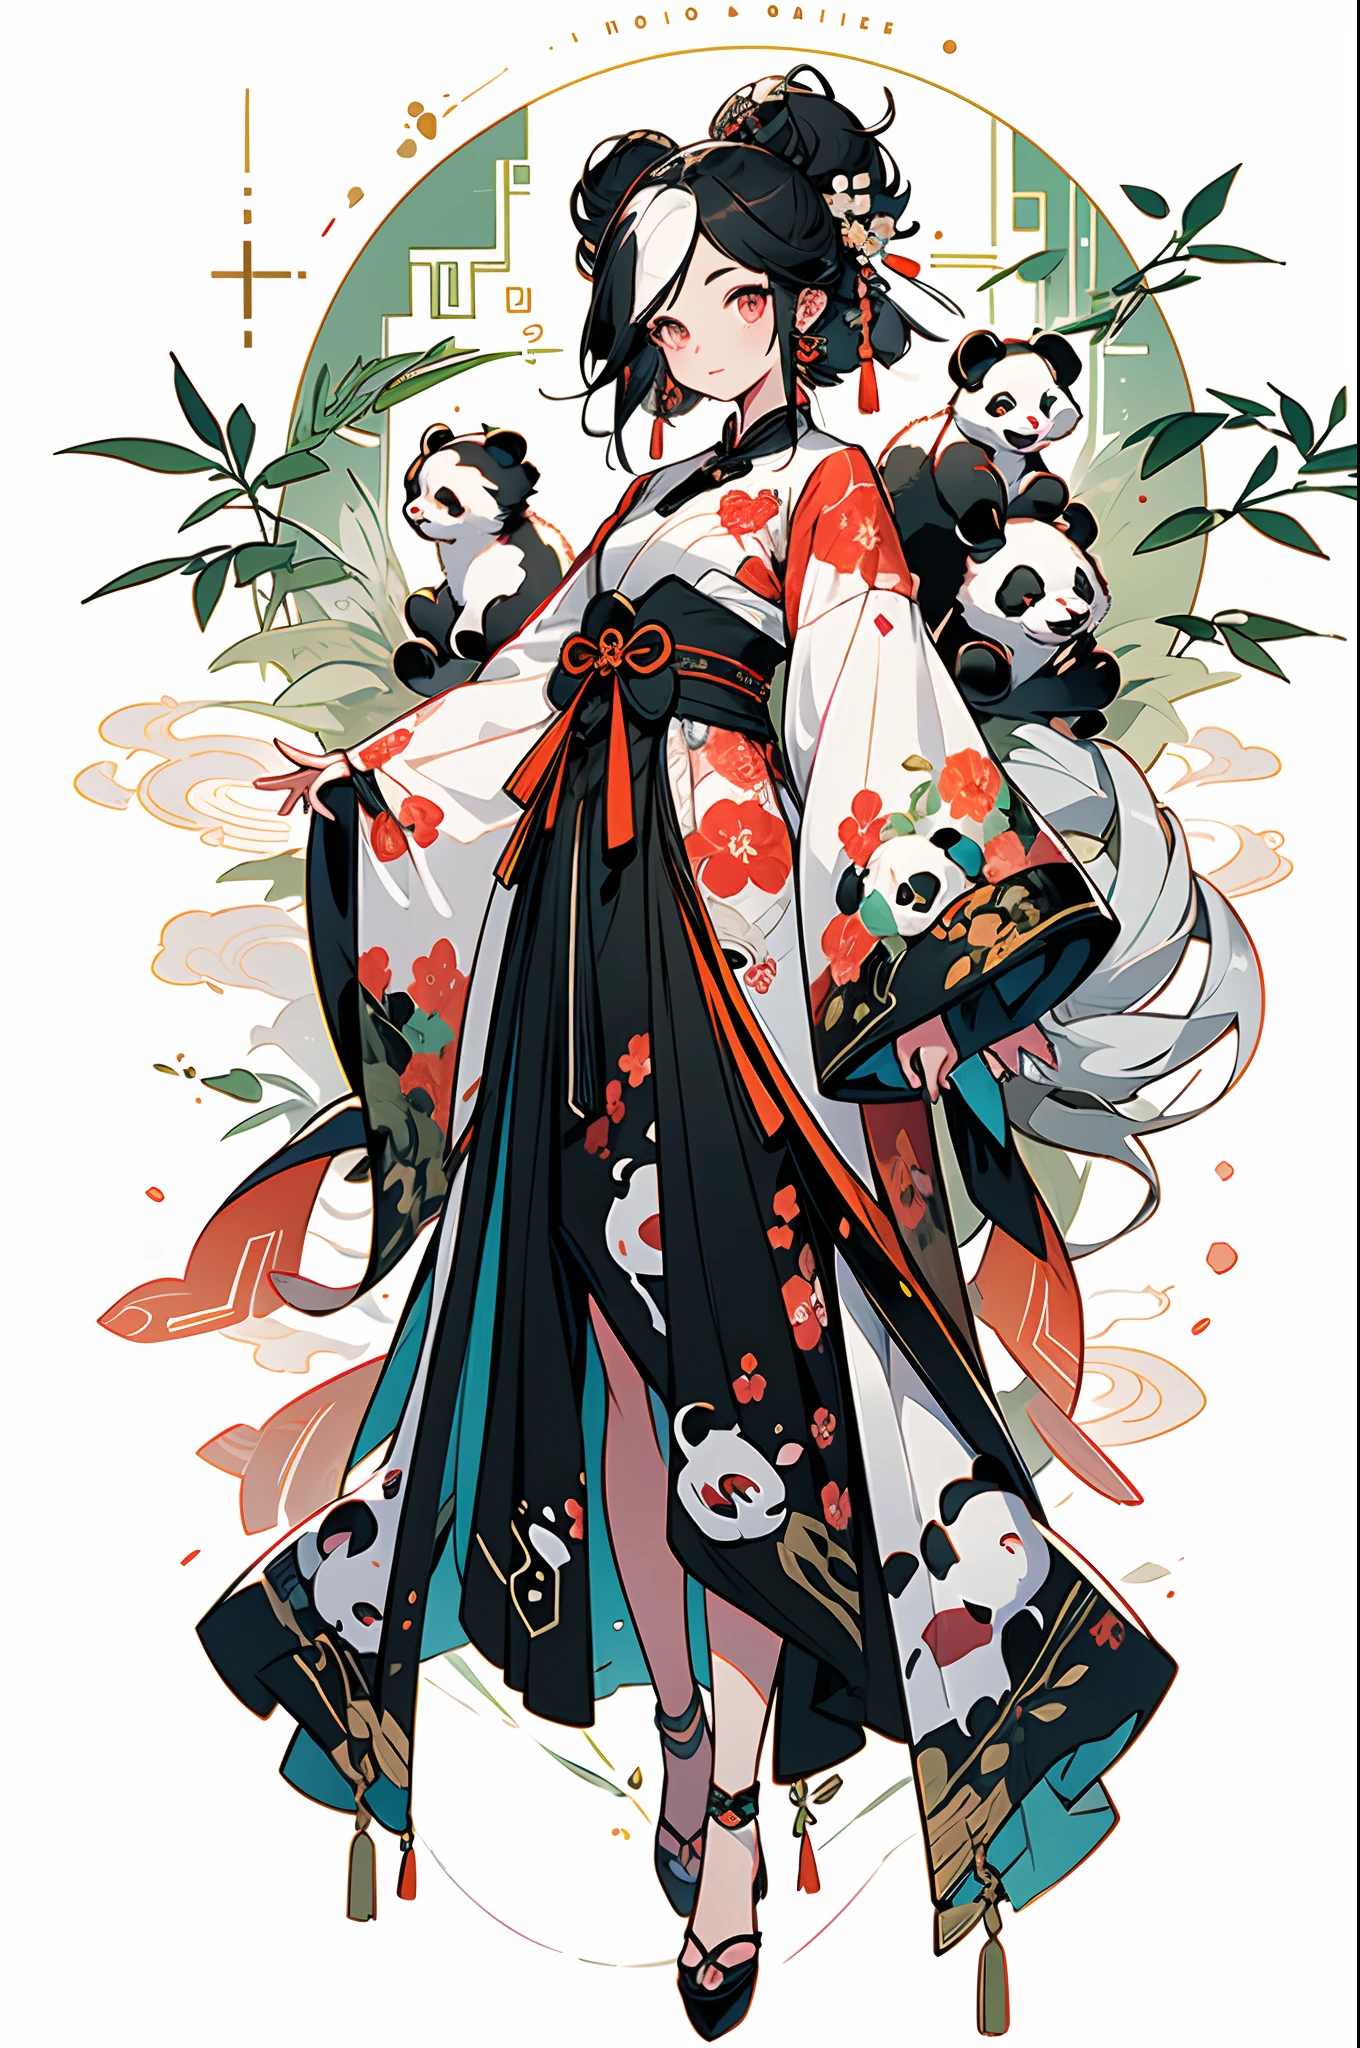 weißer Hintergrund，Unter Bambusblättern, (Der Panda sitzt auf einem Ast)，Pandas，（1Kleines Mädchen：1.5，Der obere Teil des Körpers，Betrachter betrachten），Rosa und weiße Kleidung，Gesichts-Nahaufnahmen，große schöne Augen，detailliertes Gesicht mit，Auffällige Kleidung，Ätherischer Panda，(Chinesischer Panda)，verträumt，Onmyoji detaillierte Kunst，eine wunderschöne Kunstwerkillustration，Mythologische Kreaturen，Pandas，wunderschöne digitale Kunstwerke，Schuhe，Schuhwerk, China_Kleid,